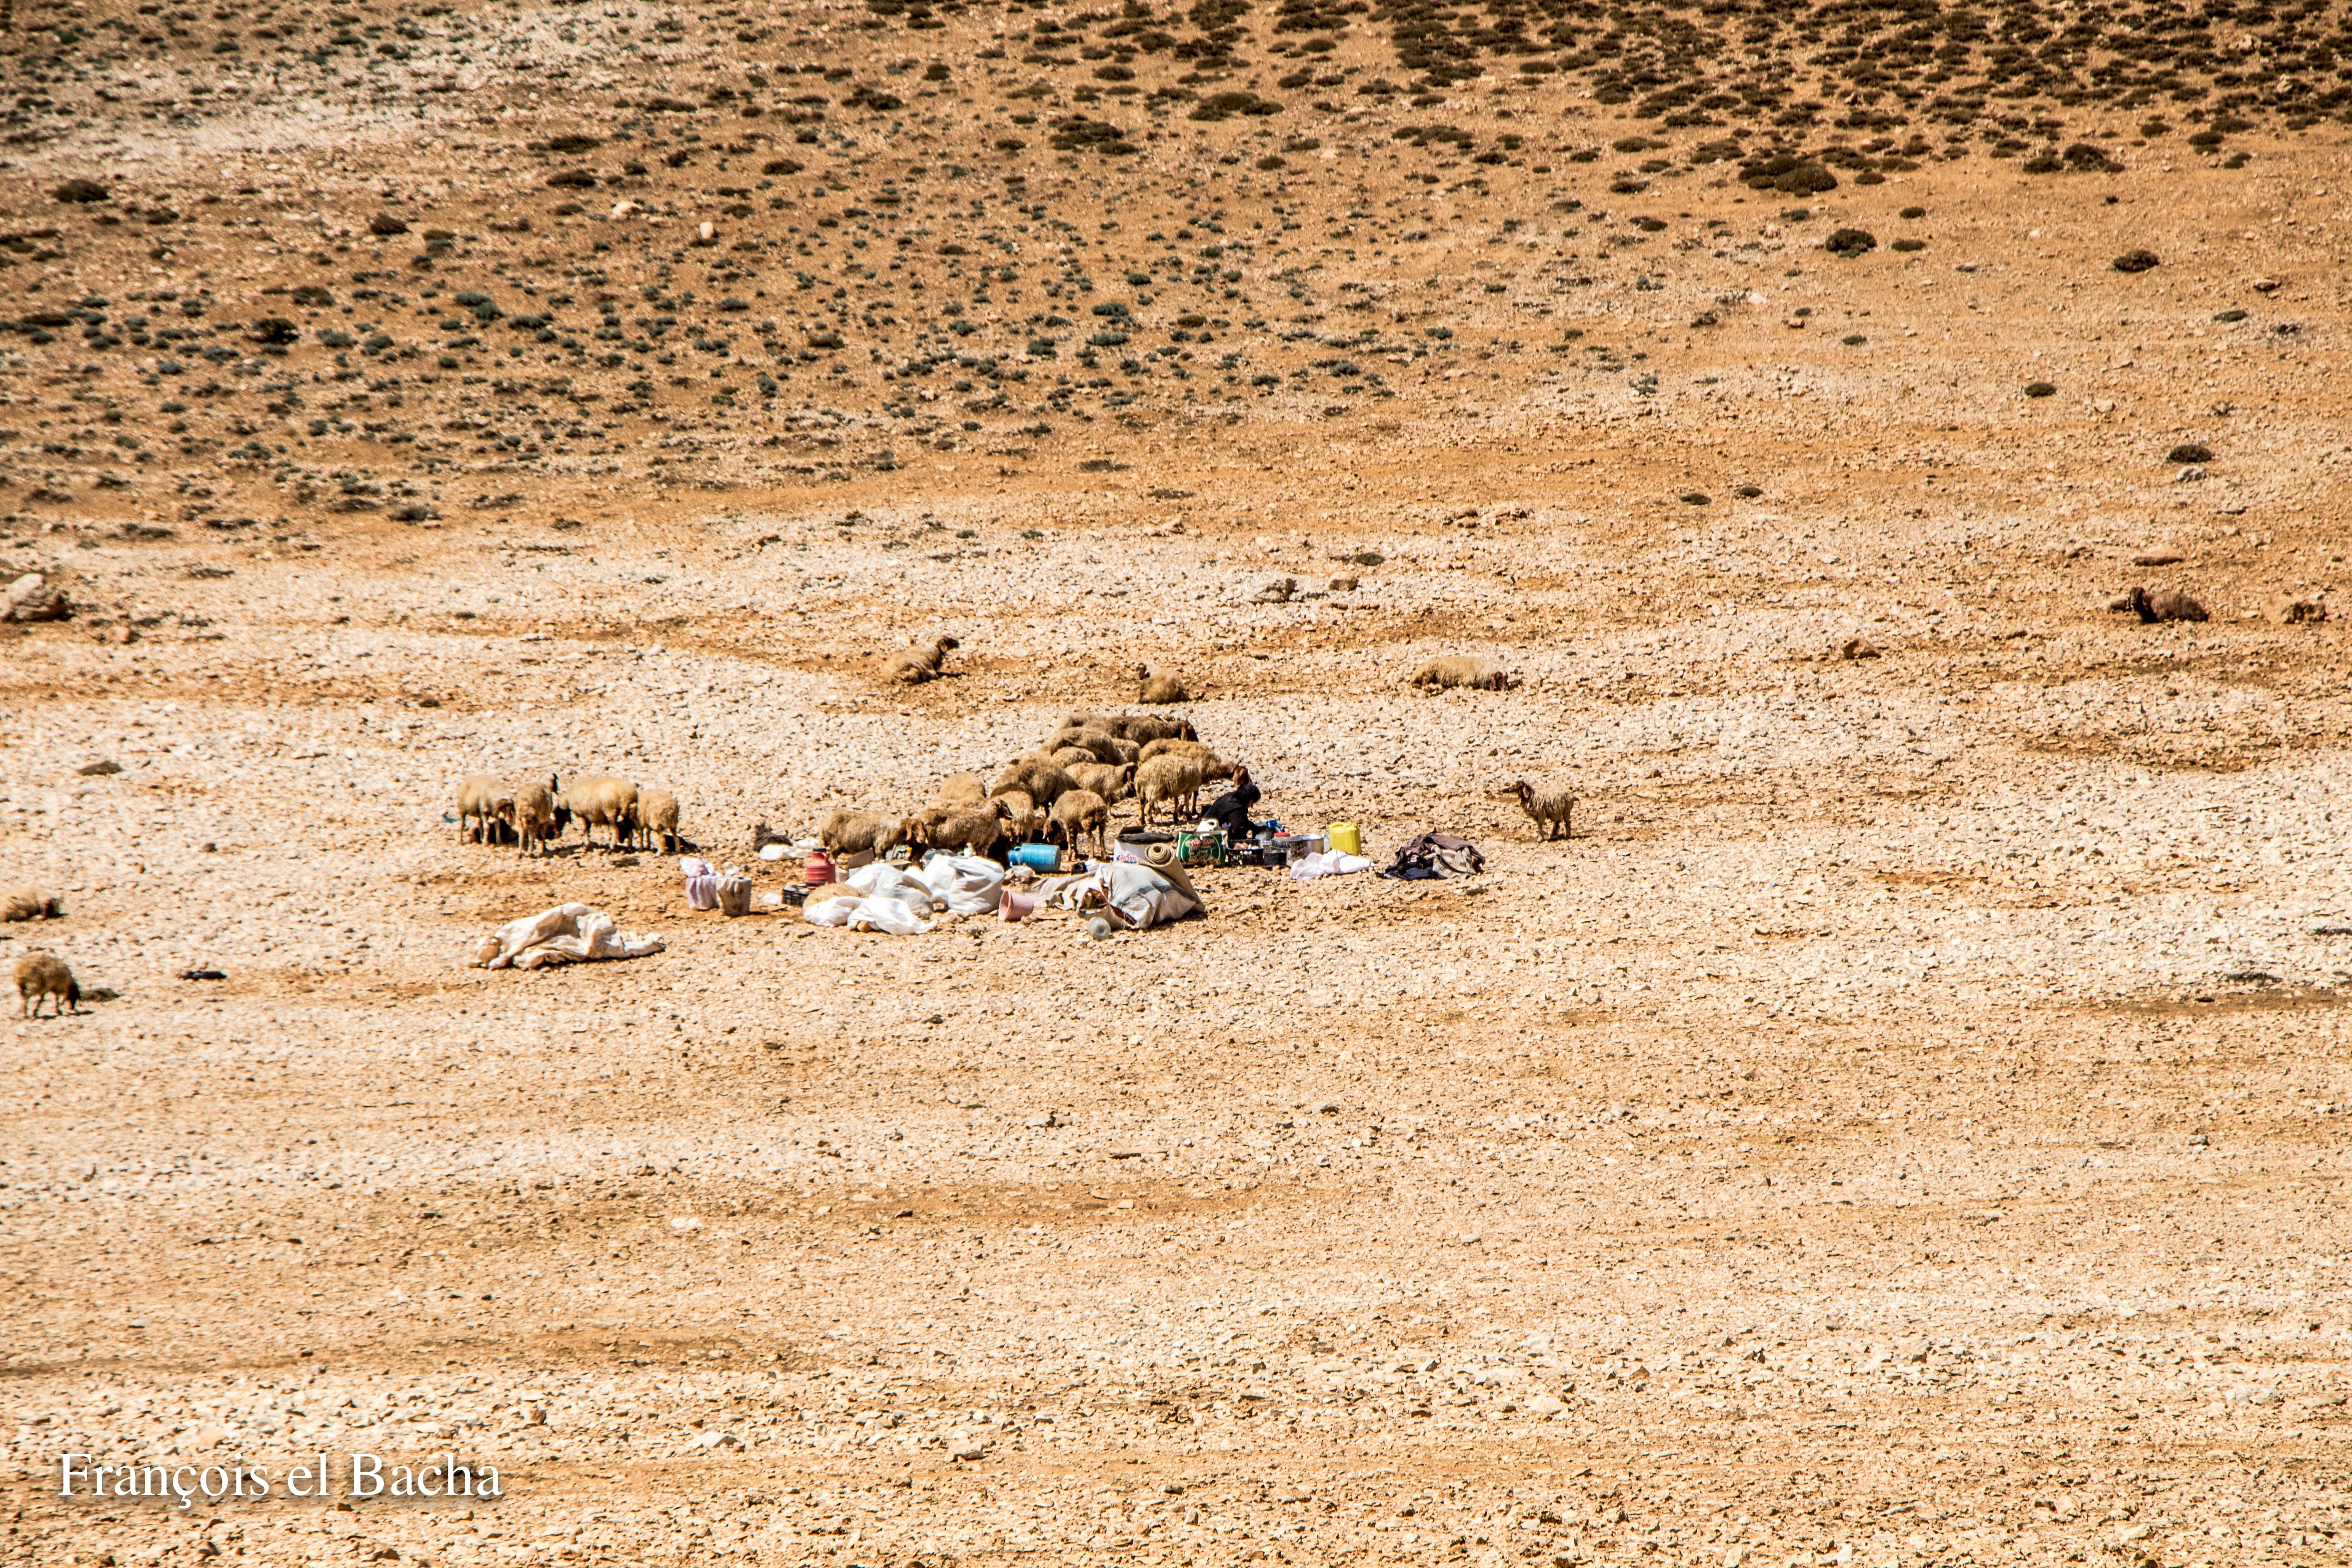 scènes pastorales sur le chemin de randonnée menant à Kornet Saouda. Crédit Photo: François el Bacha, tous droits réservés.